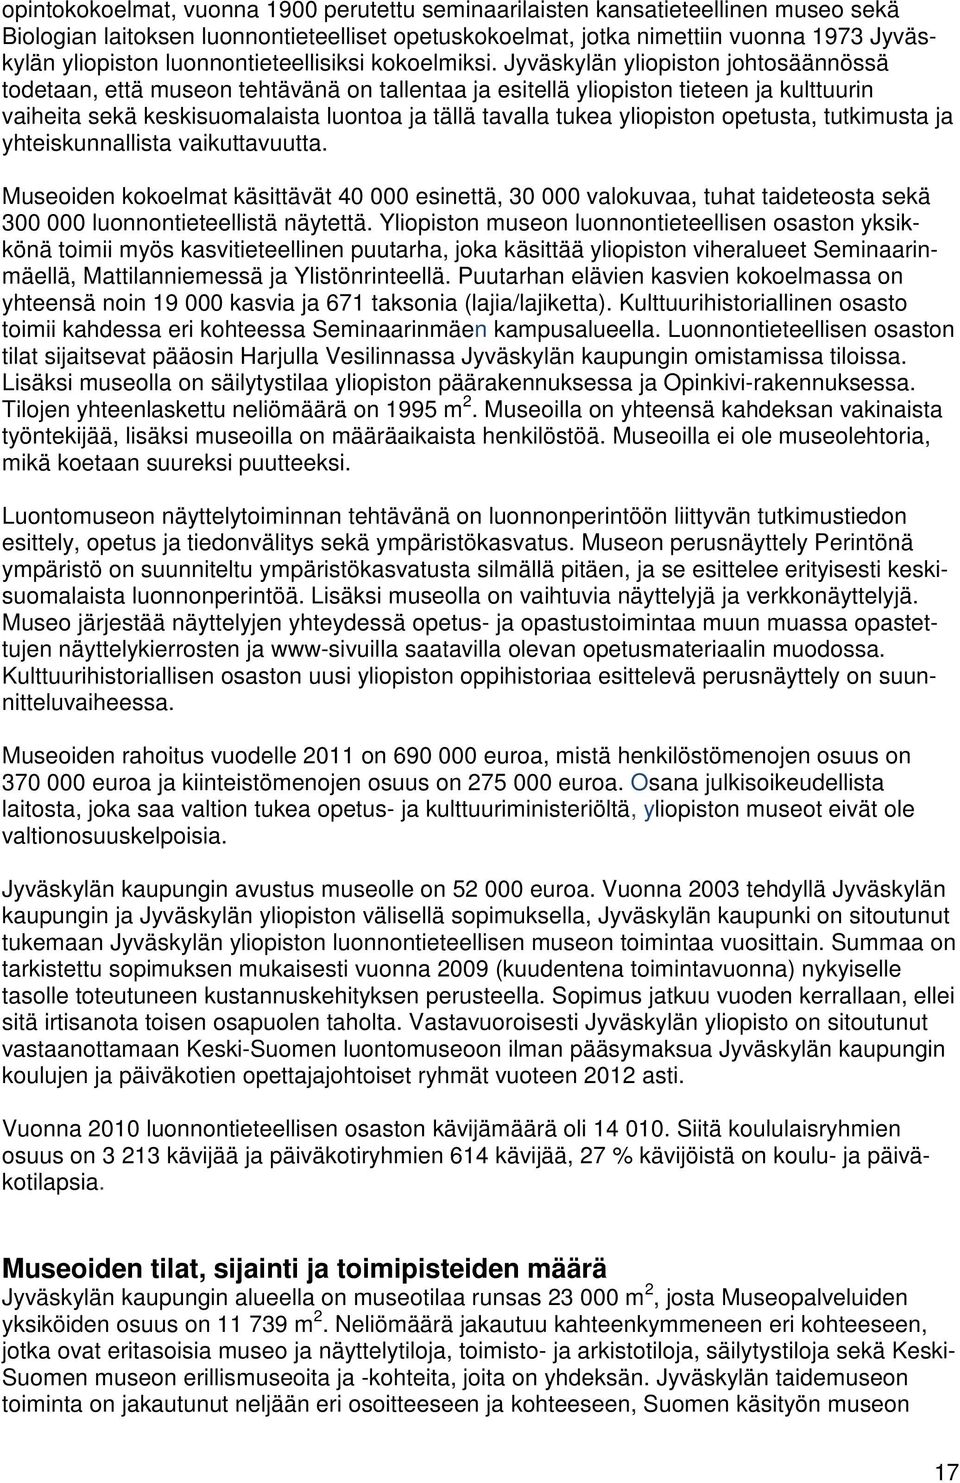 Jyväskylän yliopiston johtosäännössä todetaan, että museon tehtävänä on tallentaa ja esitellä yliopiston tieteen ja kulttuurin vaiheita sekä keskisuomalaista luontoa ja tällä tavalla tukea yliopiston